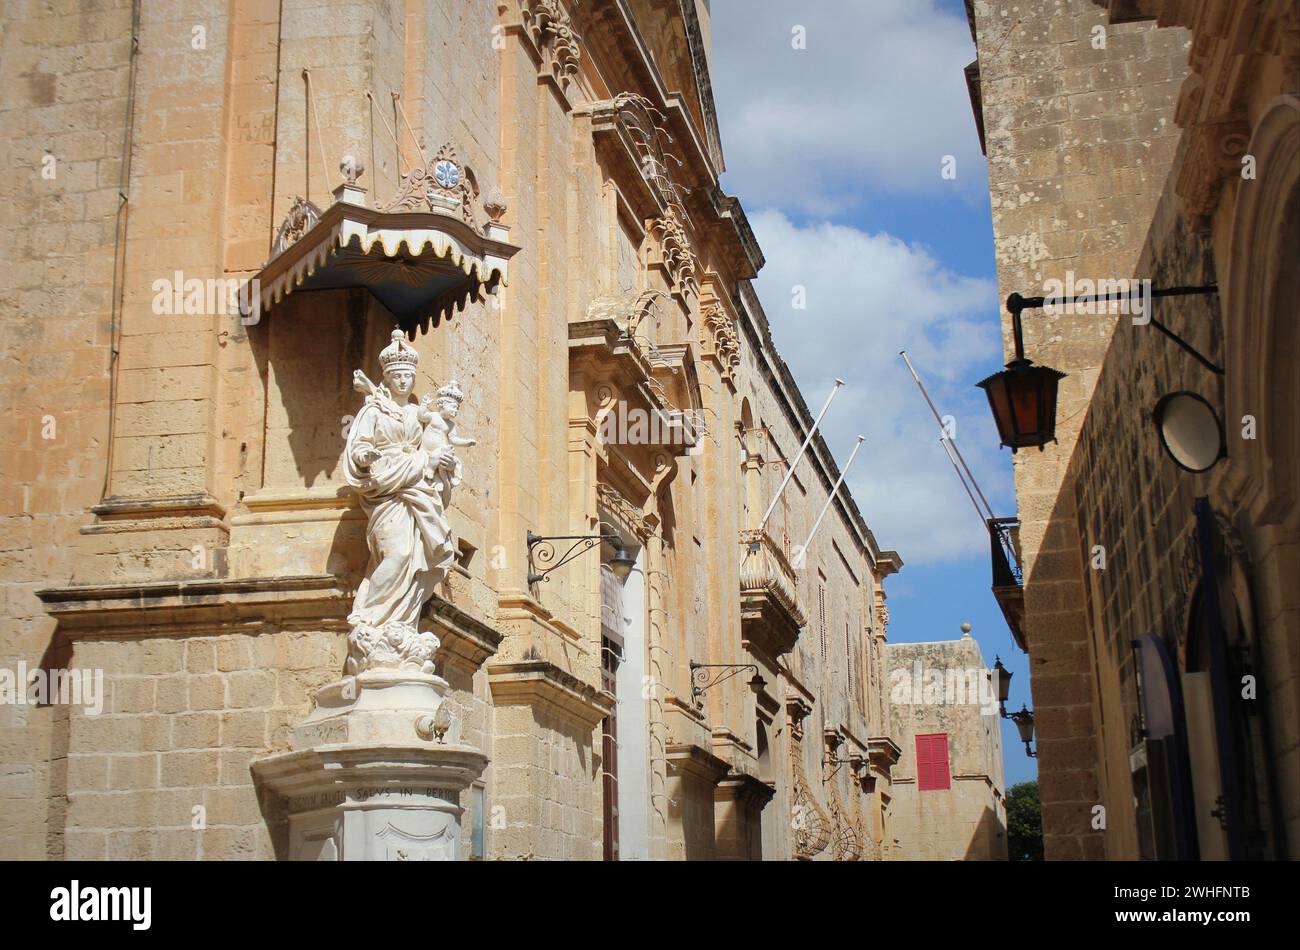 La statua della Vergine Maria con Gesù bambino su un angolo del convento carmelitano di Mdina. Malta Foto Stock